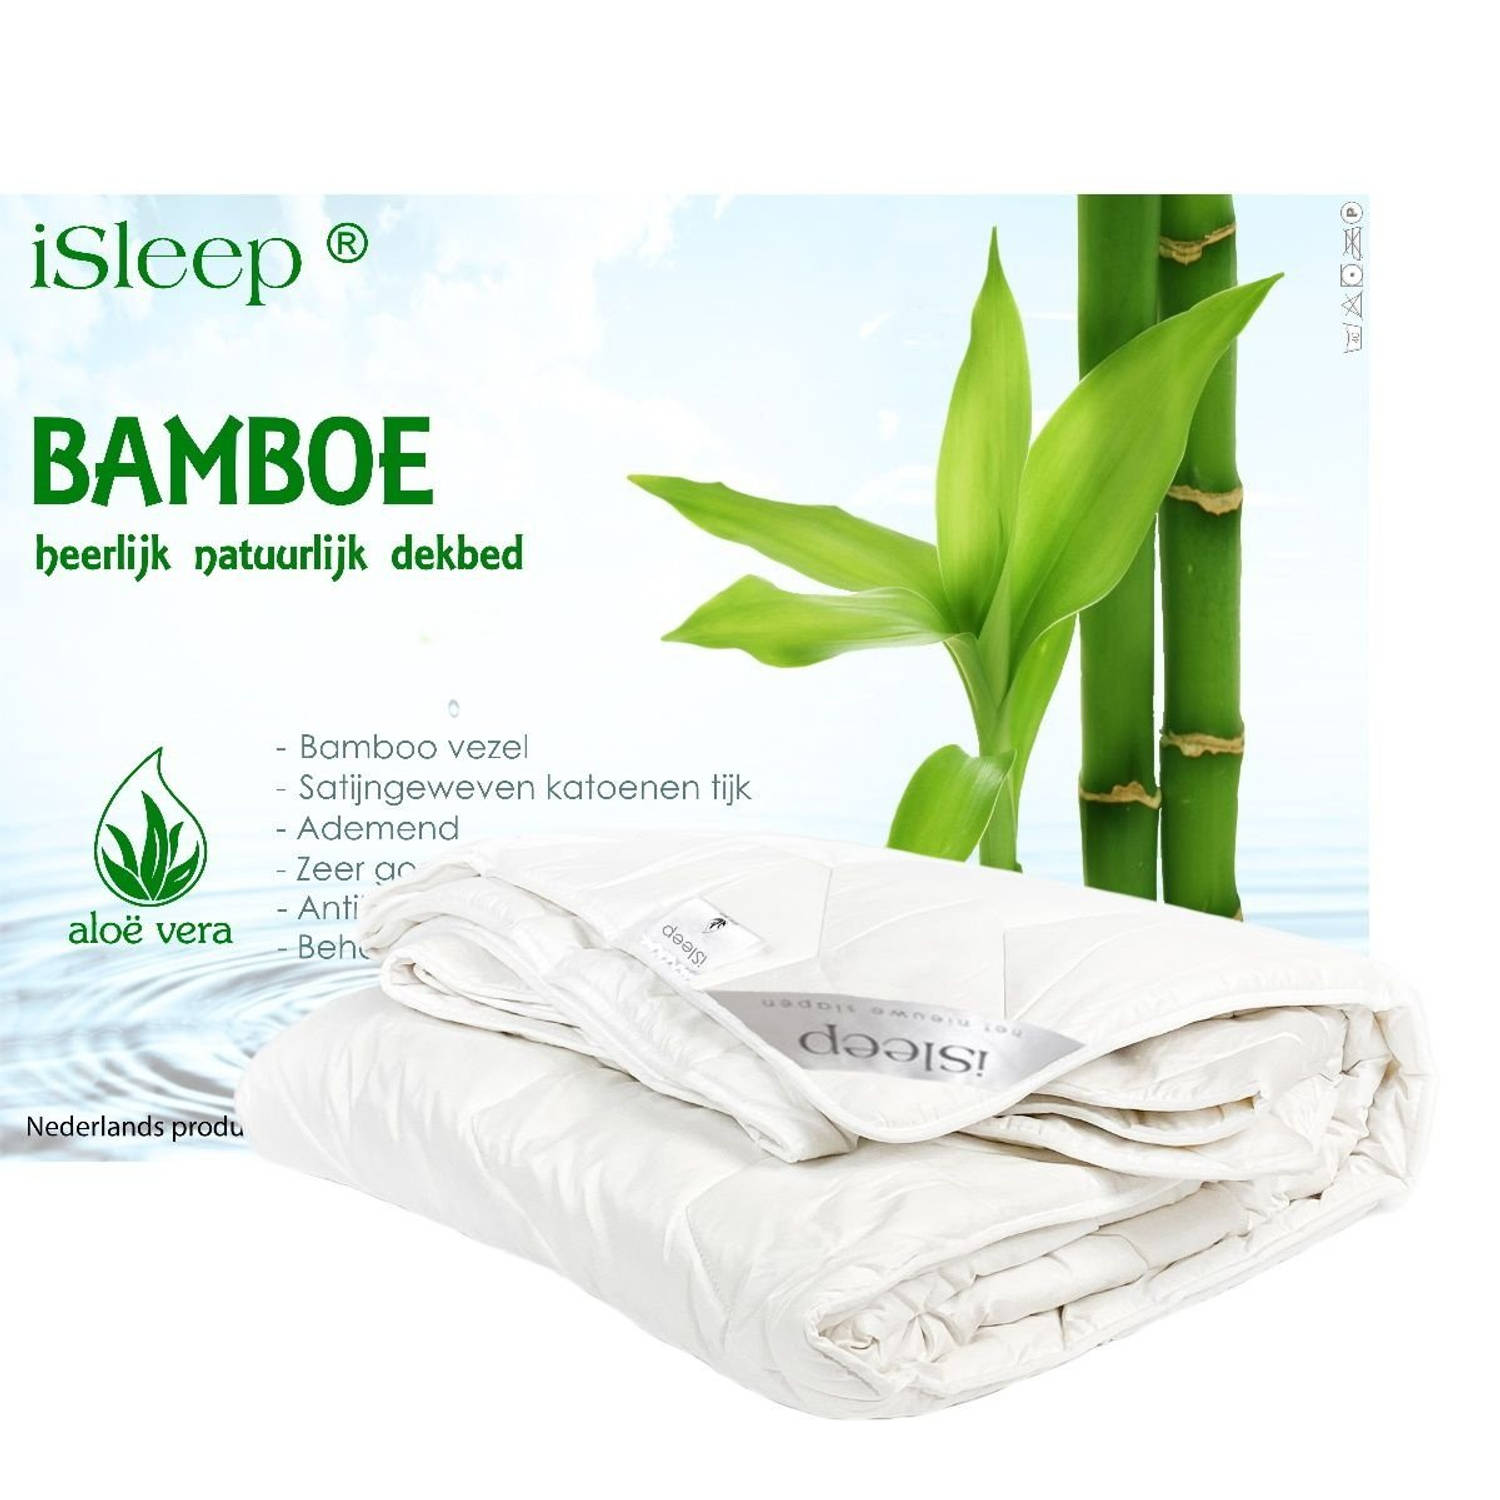 iSleep enkel dekbed Bamboo Comfort DeLuxe - 1-Persoons 140x220 cm